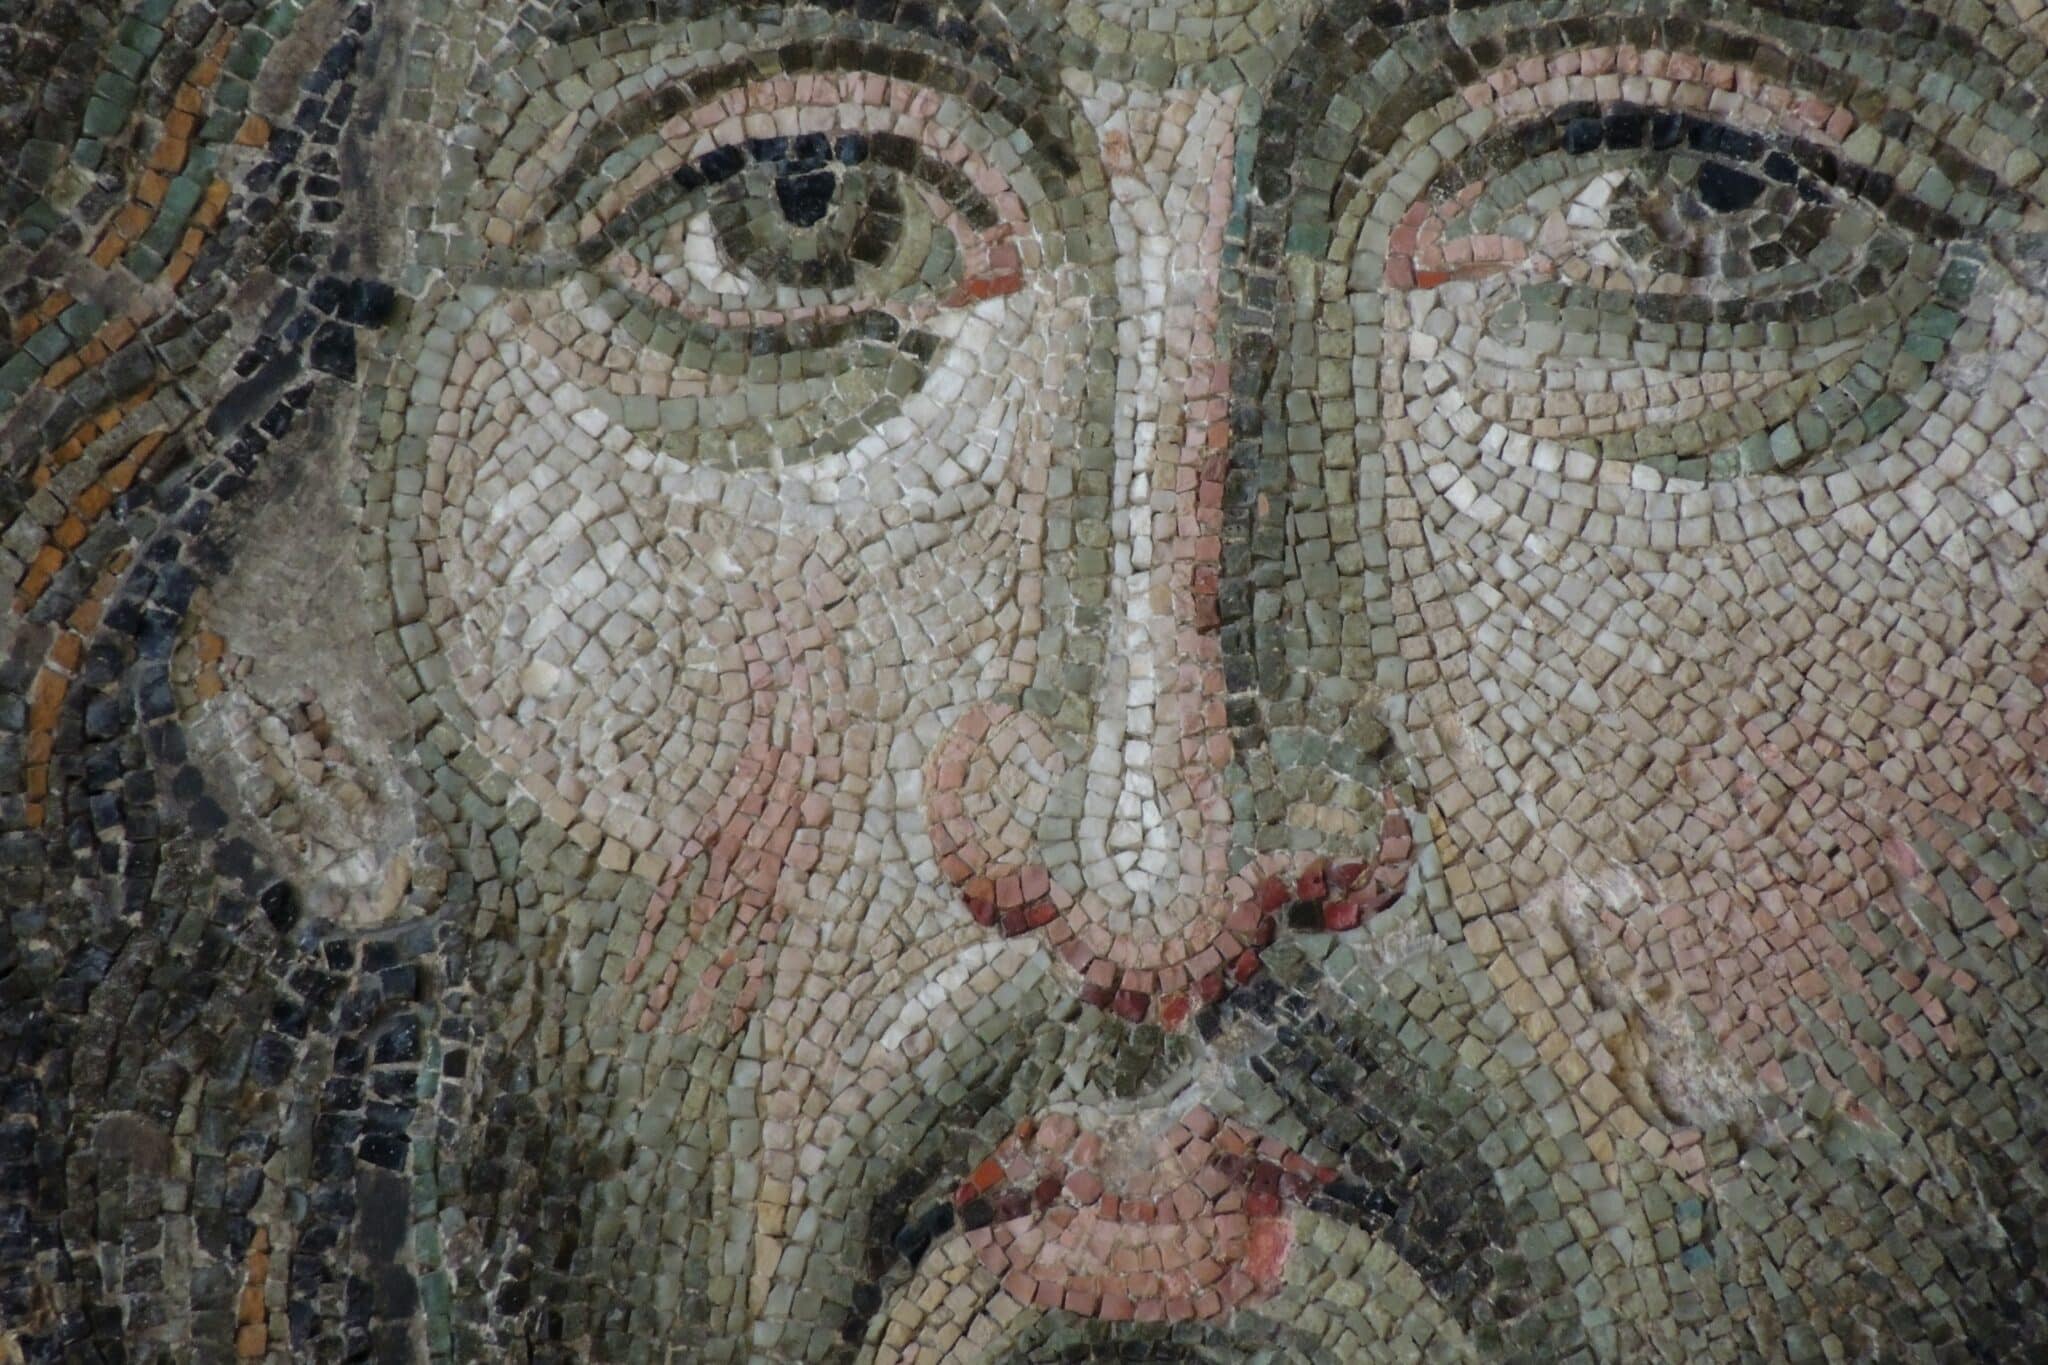 Mosaic of Jesus | Photo by Nick Kwan on Unsplash